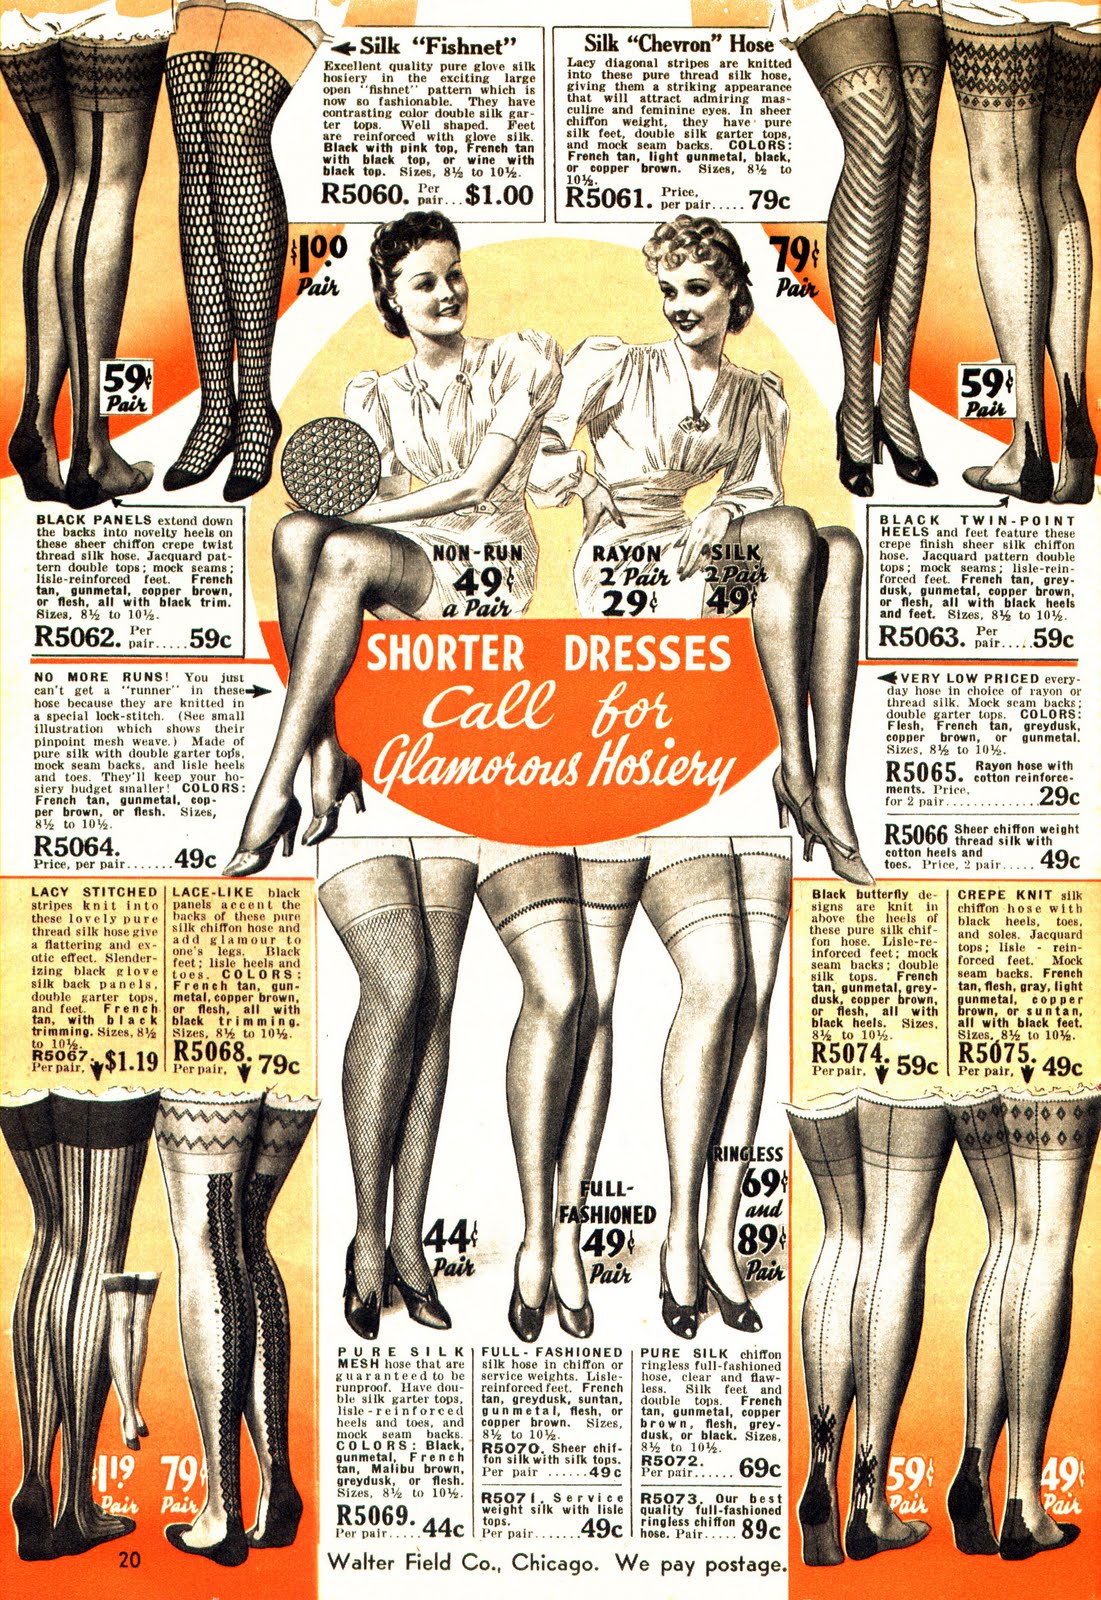 1940s silk stockings